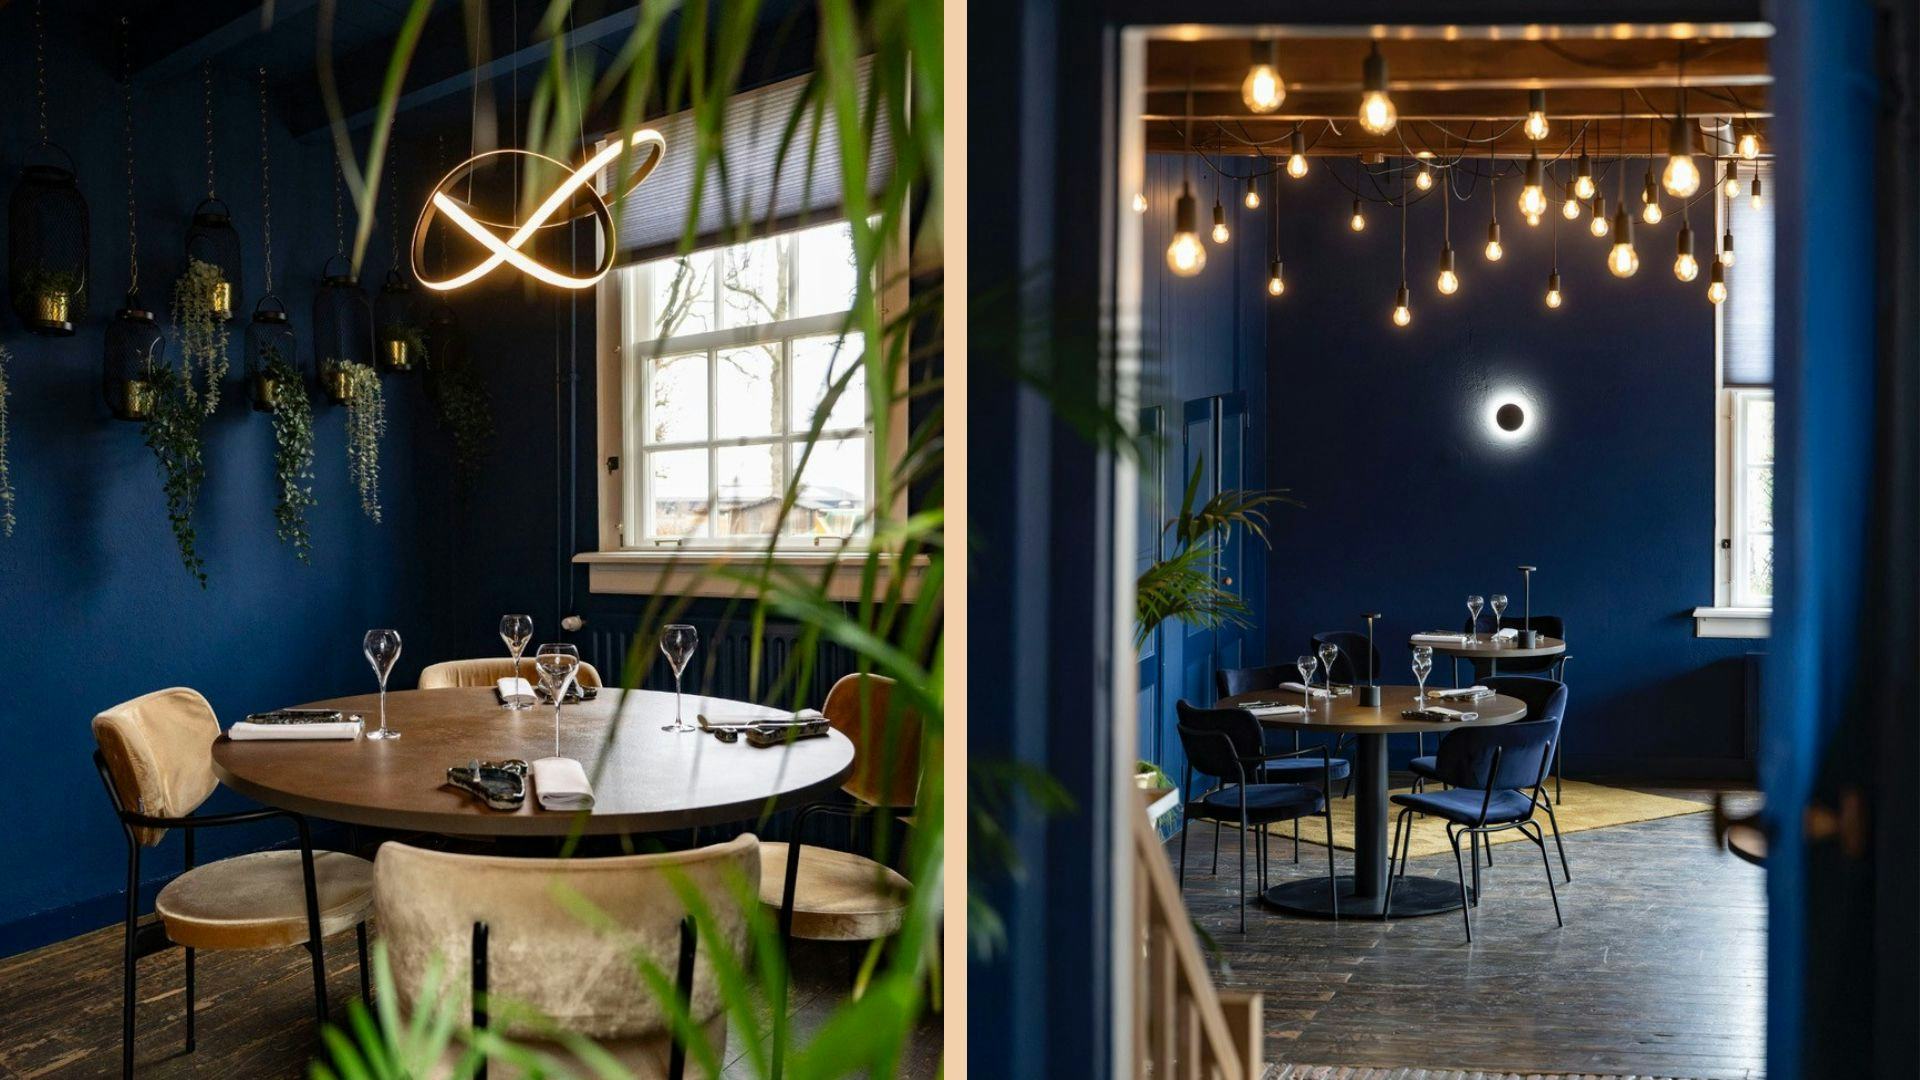 Binnenkijken bij vernieuwd restaurant De Koetsier: 'Eigentijds chic met Koninklijk blauw'